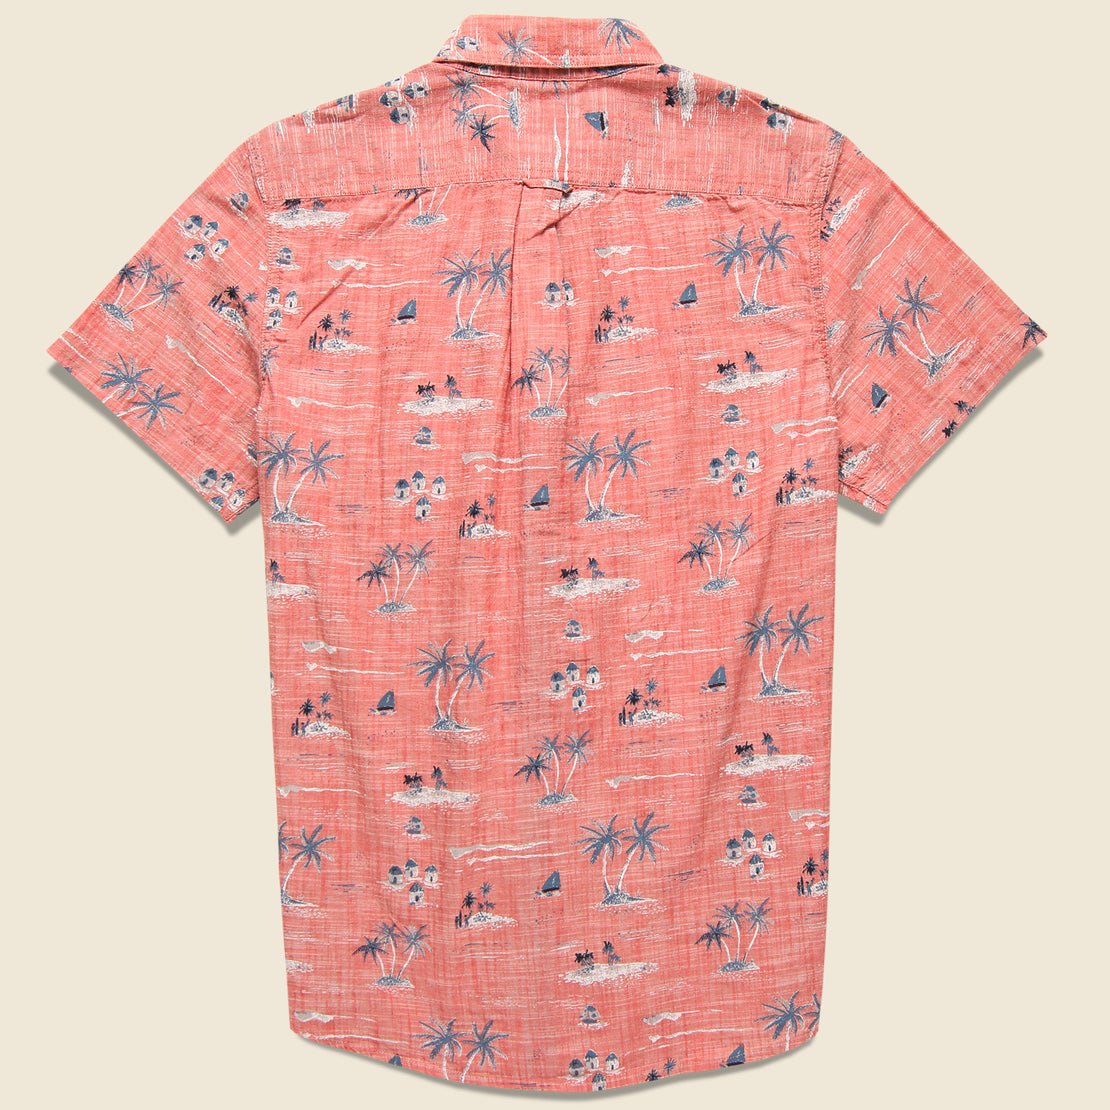 Giligans Printed Chambray Shirt - Dusty Cedar